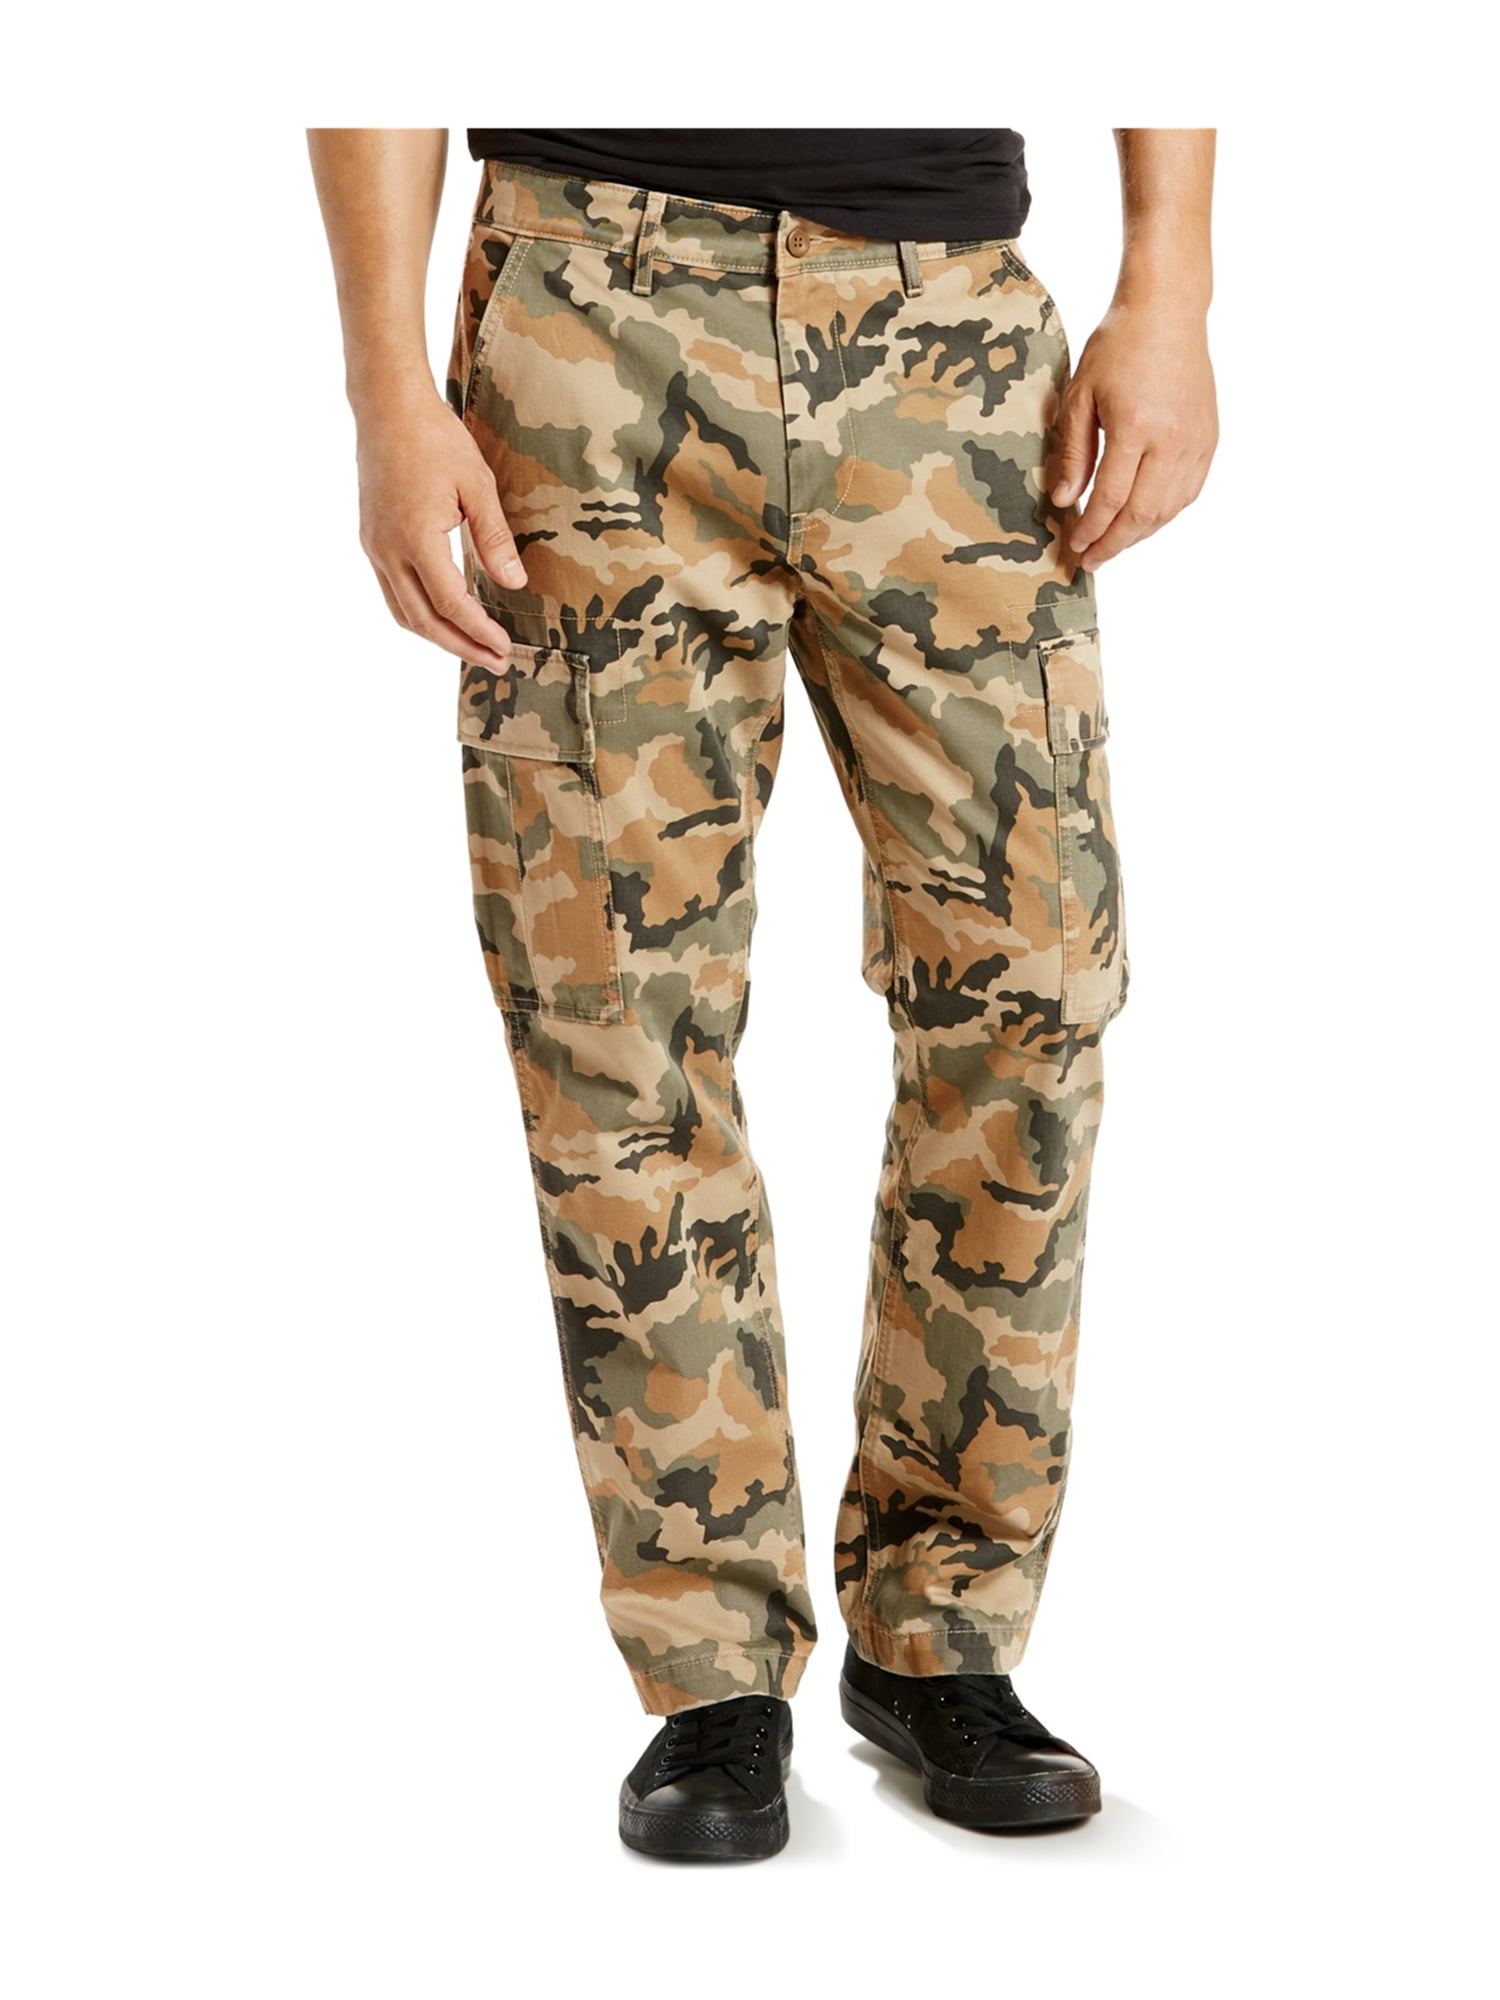 Levi's Mens Camo Casual Cargo Pants elmwood 31x30 | Walmart Canada